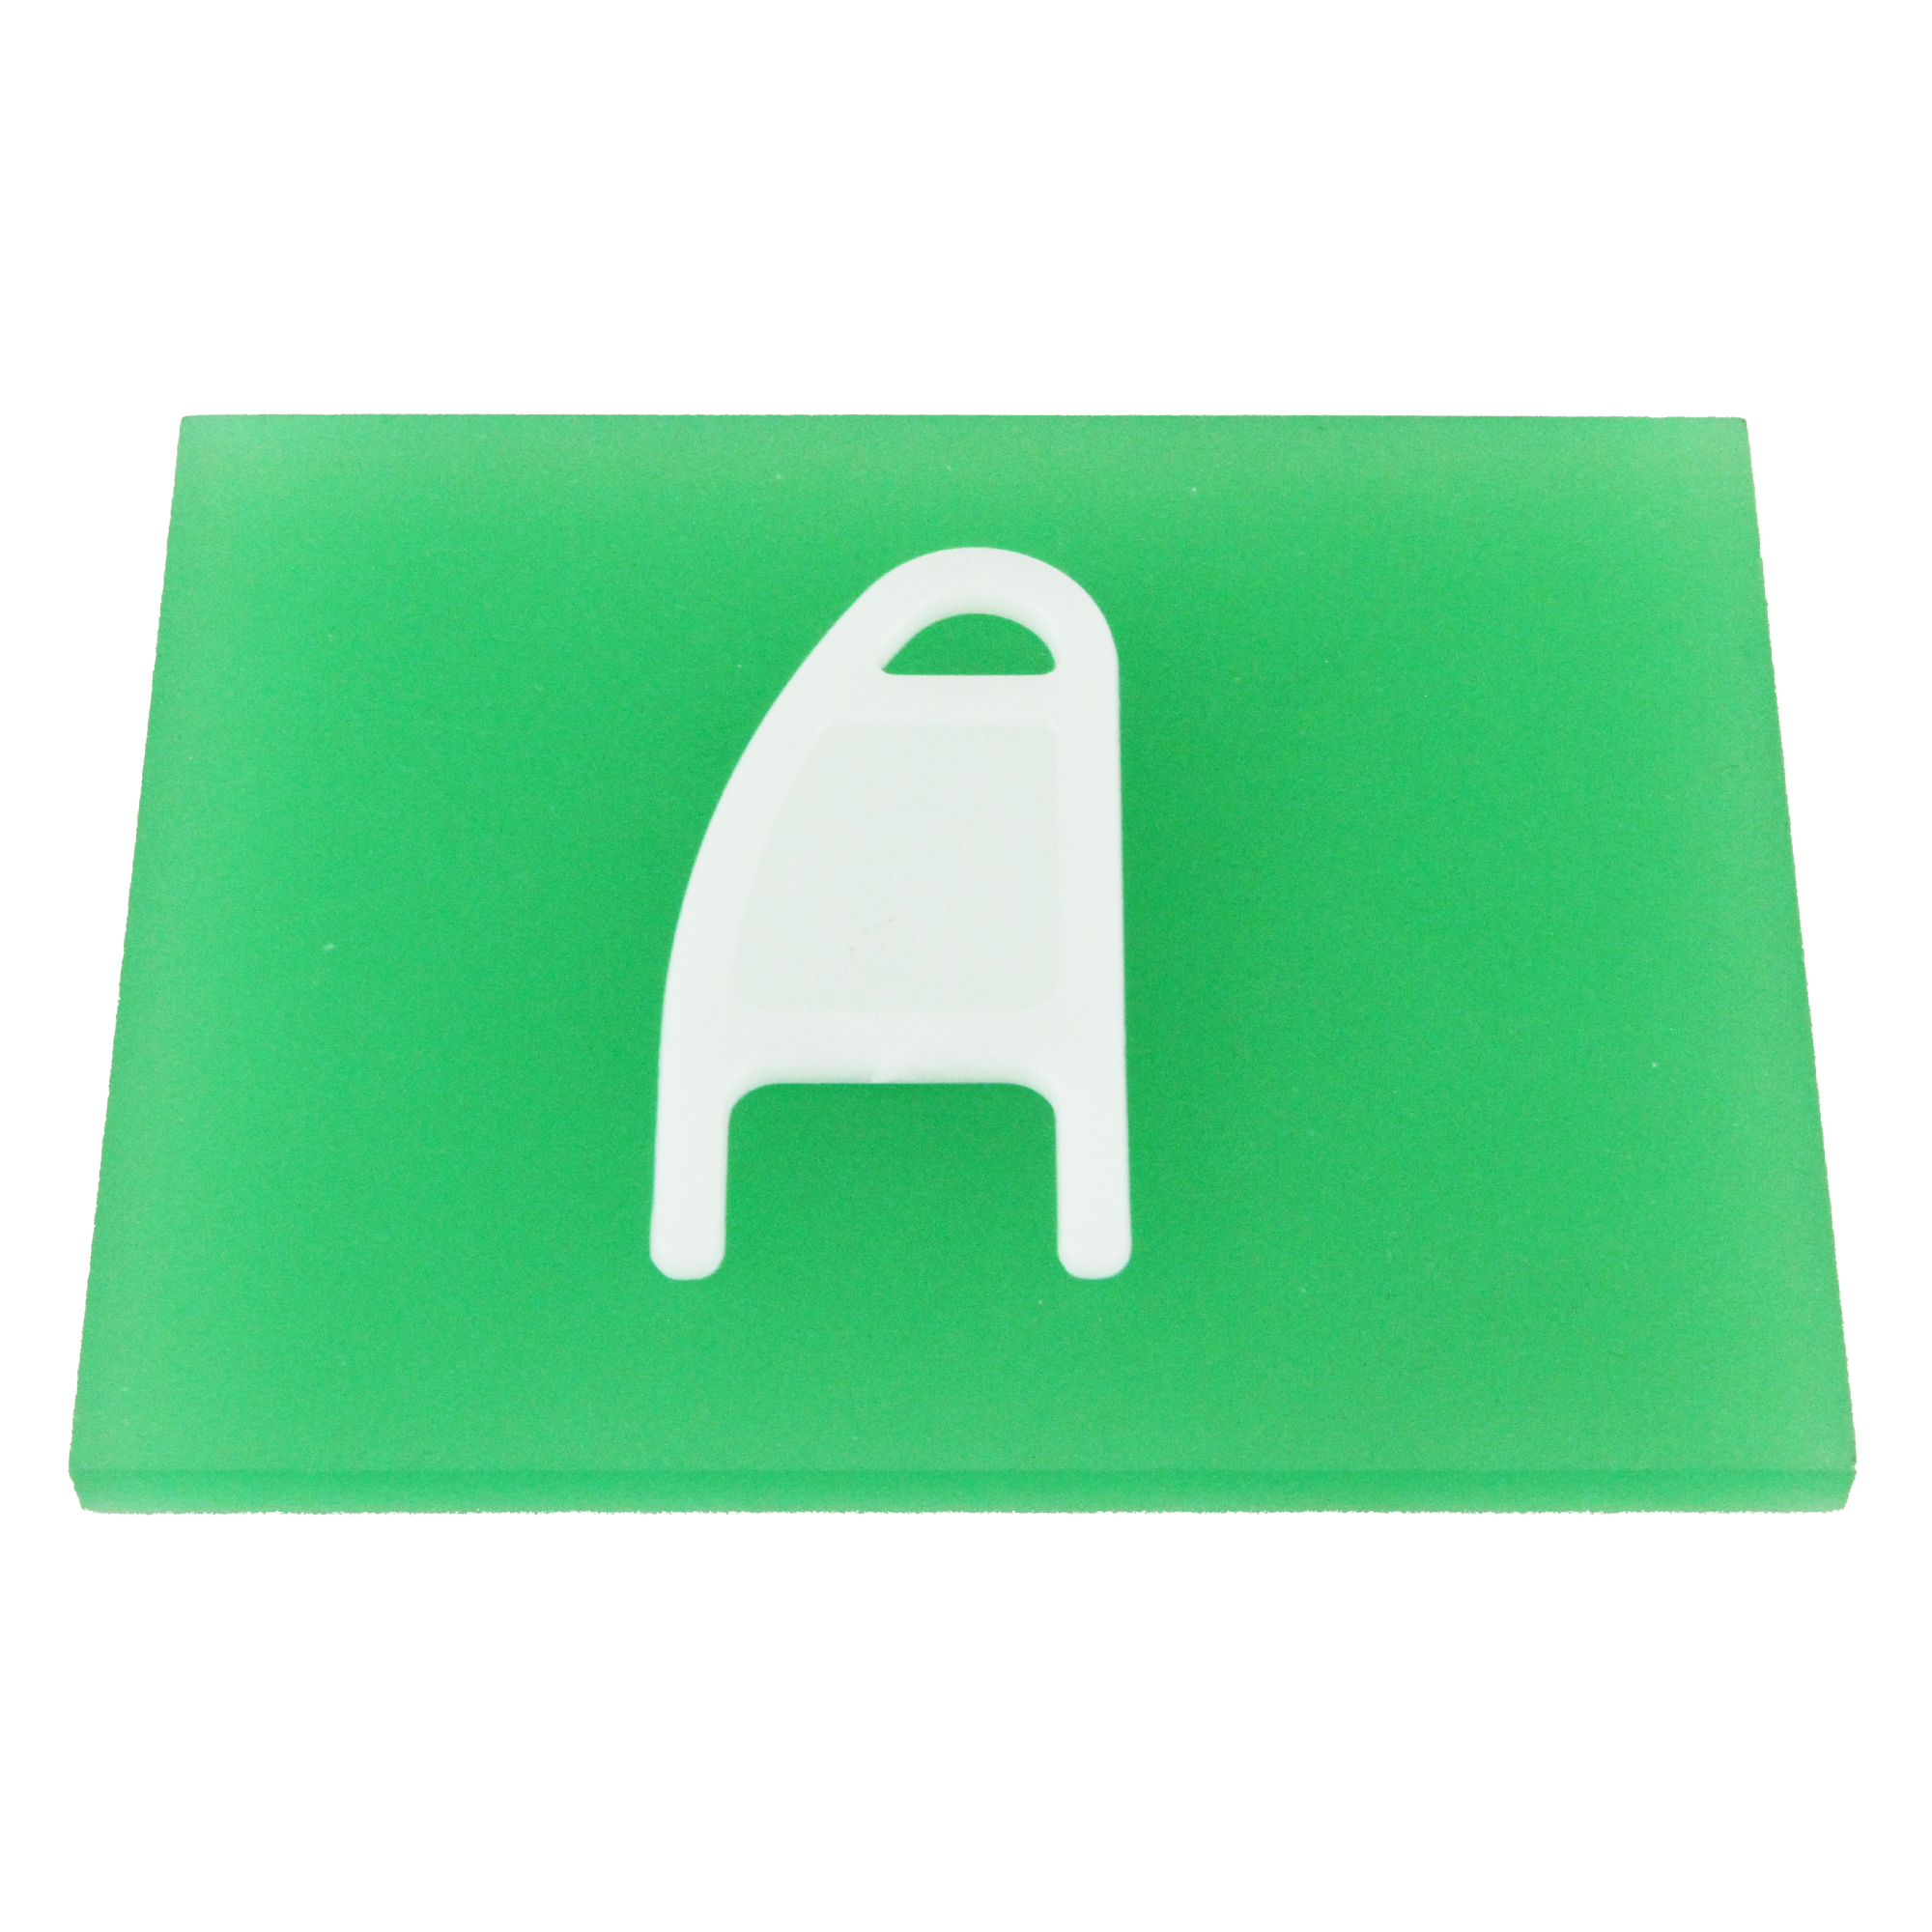 Schlüssel für PICEA Toilettenpapierspender SANISMART Ersatzschlüssel